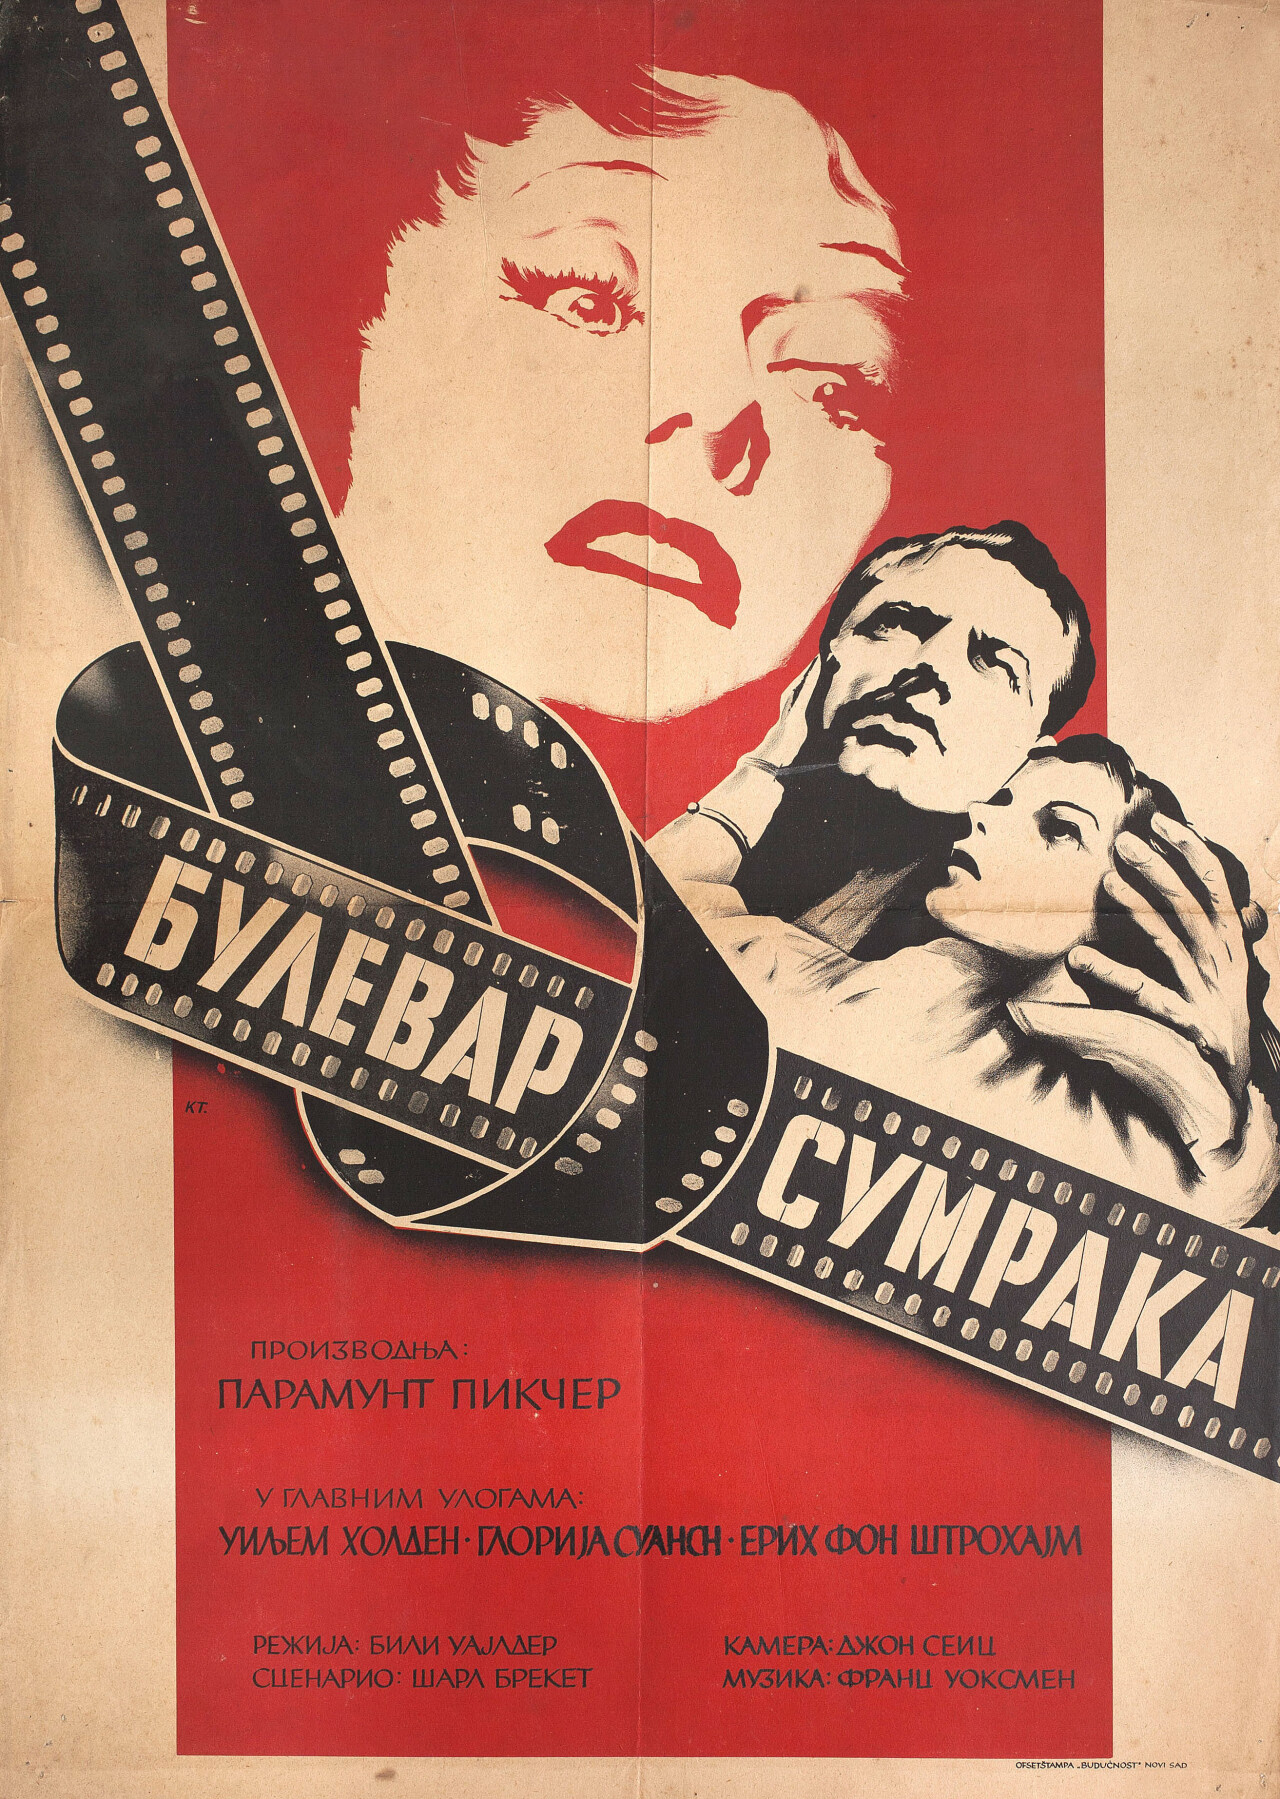 Бульвар Сансет (Sunset Boulevard, 1950), режиссёр Билли Уайлдер, югославский постер к фильму (графический дизайн, 1951 год)